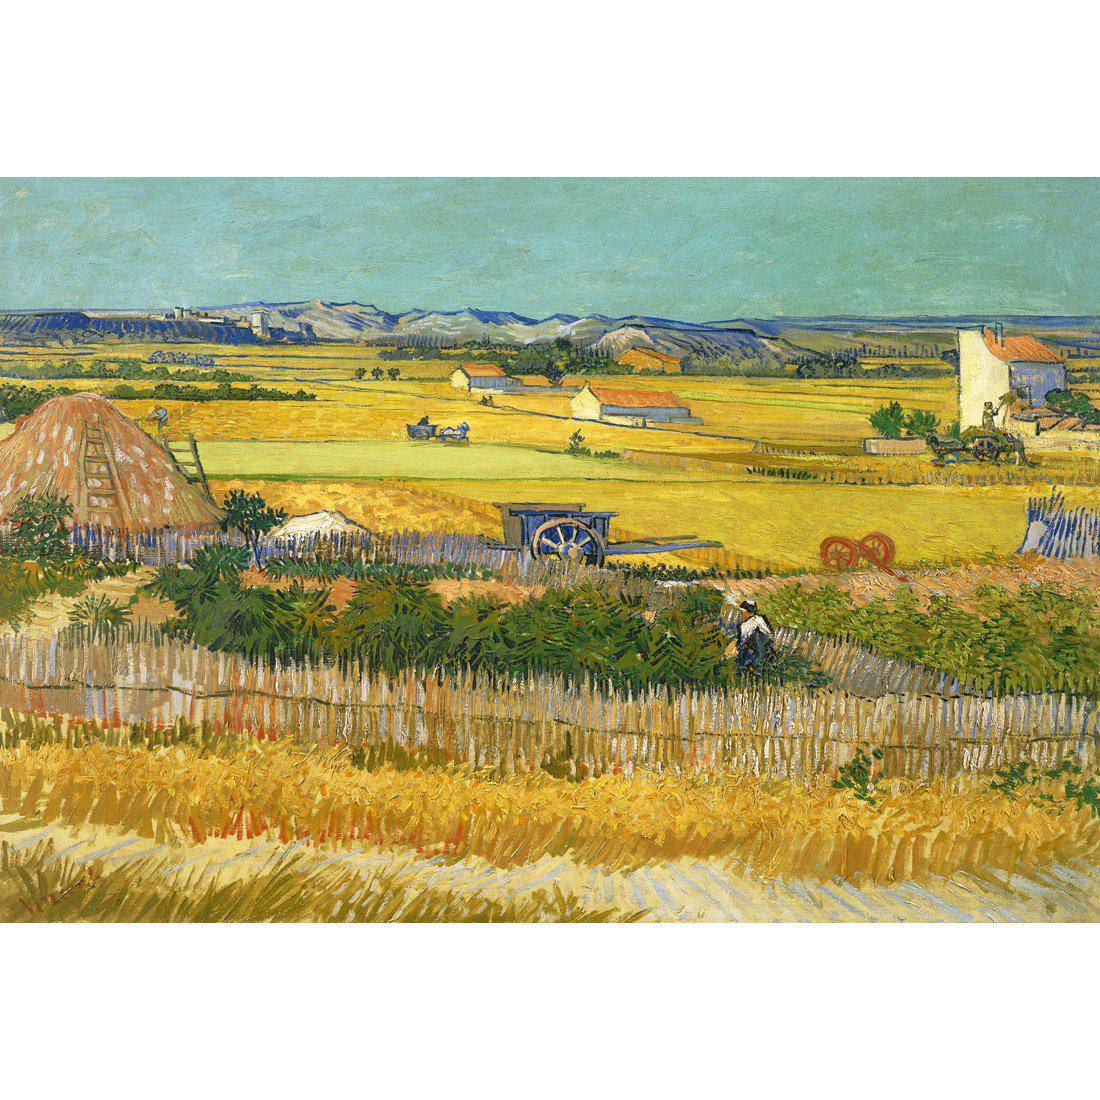 Harvest - Van Gogh Canvas Art-Canvas-Wall Art Designs-45x30cm-Canvas - No Frame-Wall Art Designs